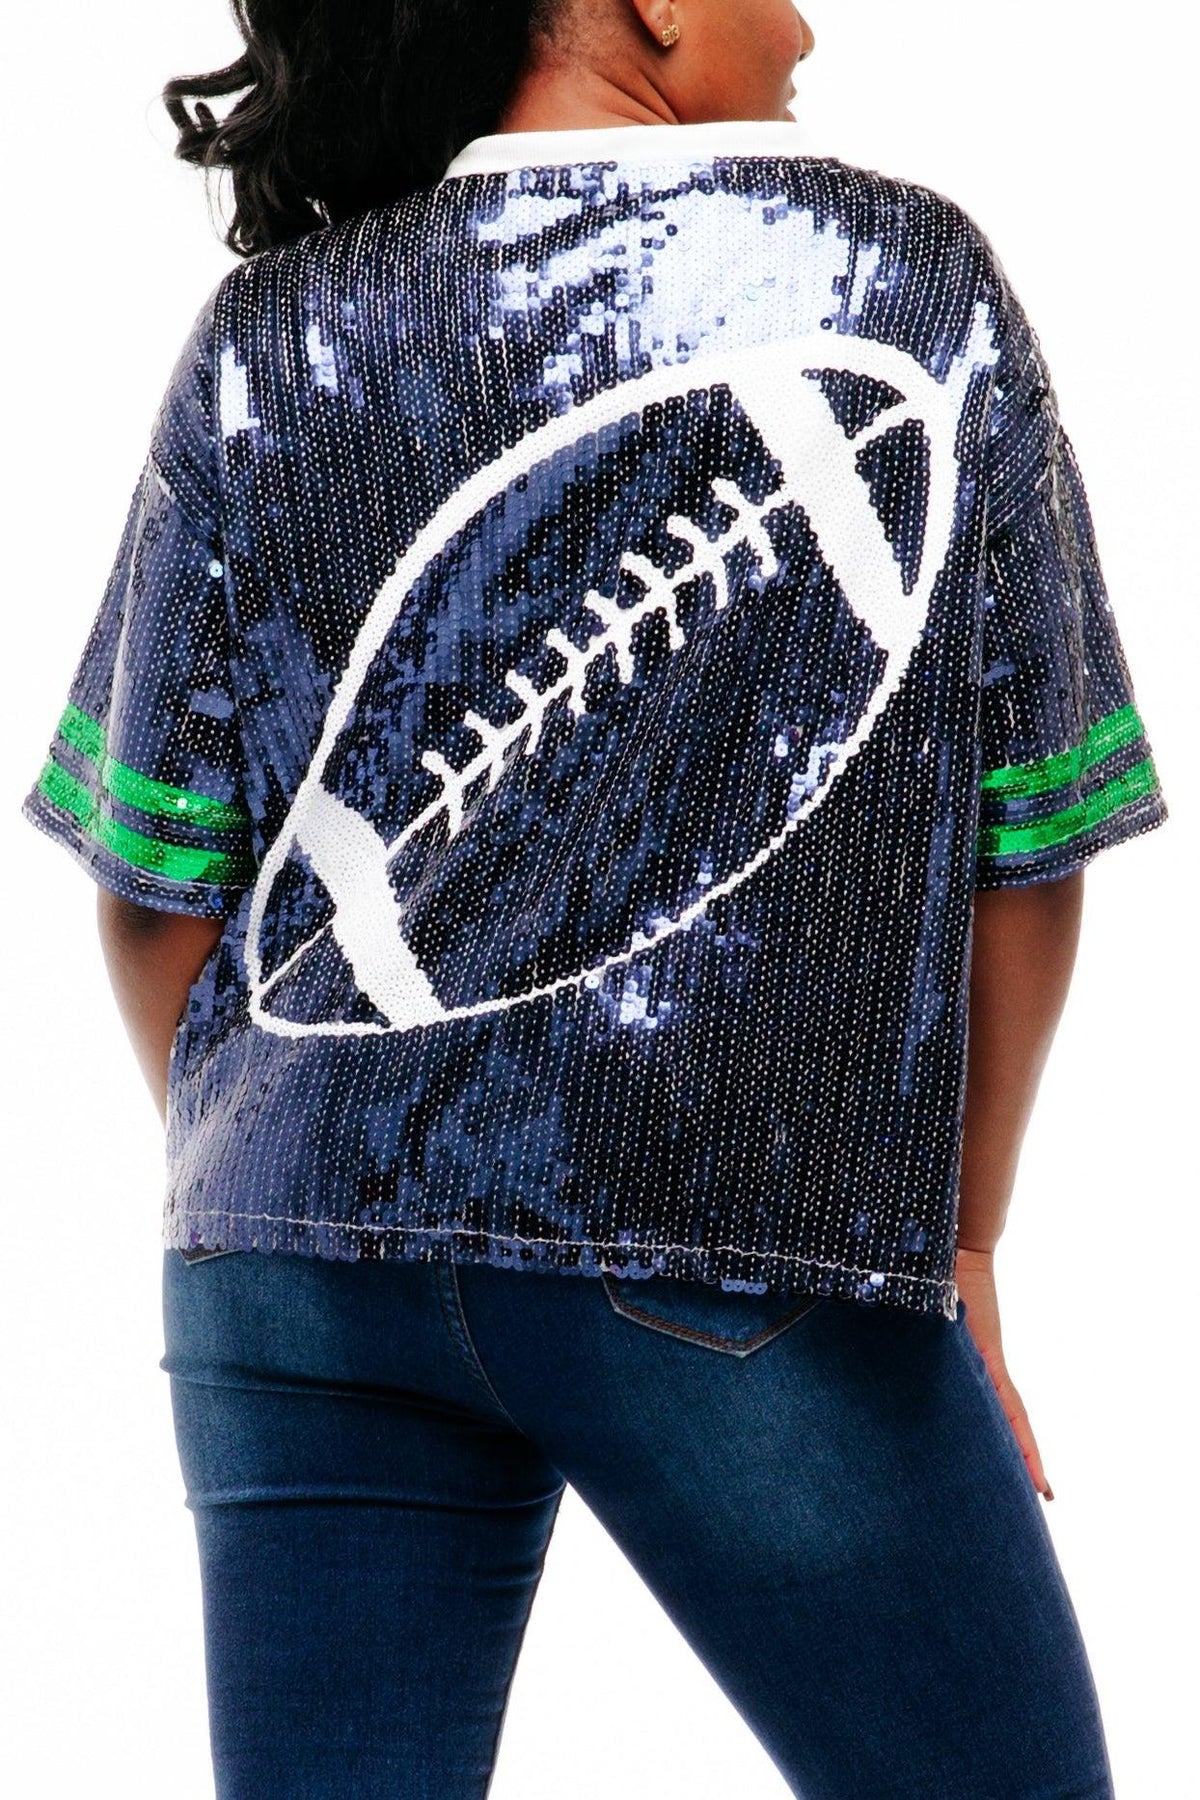 Seattle Football Sequin Shirt - SEQUIN FANS